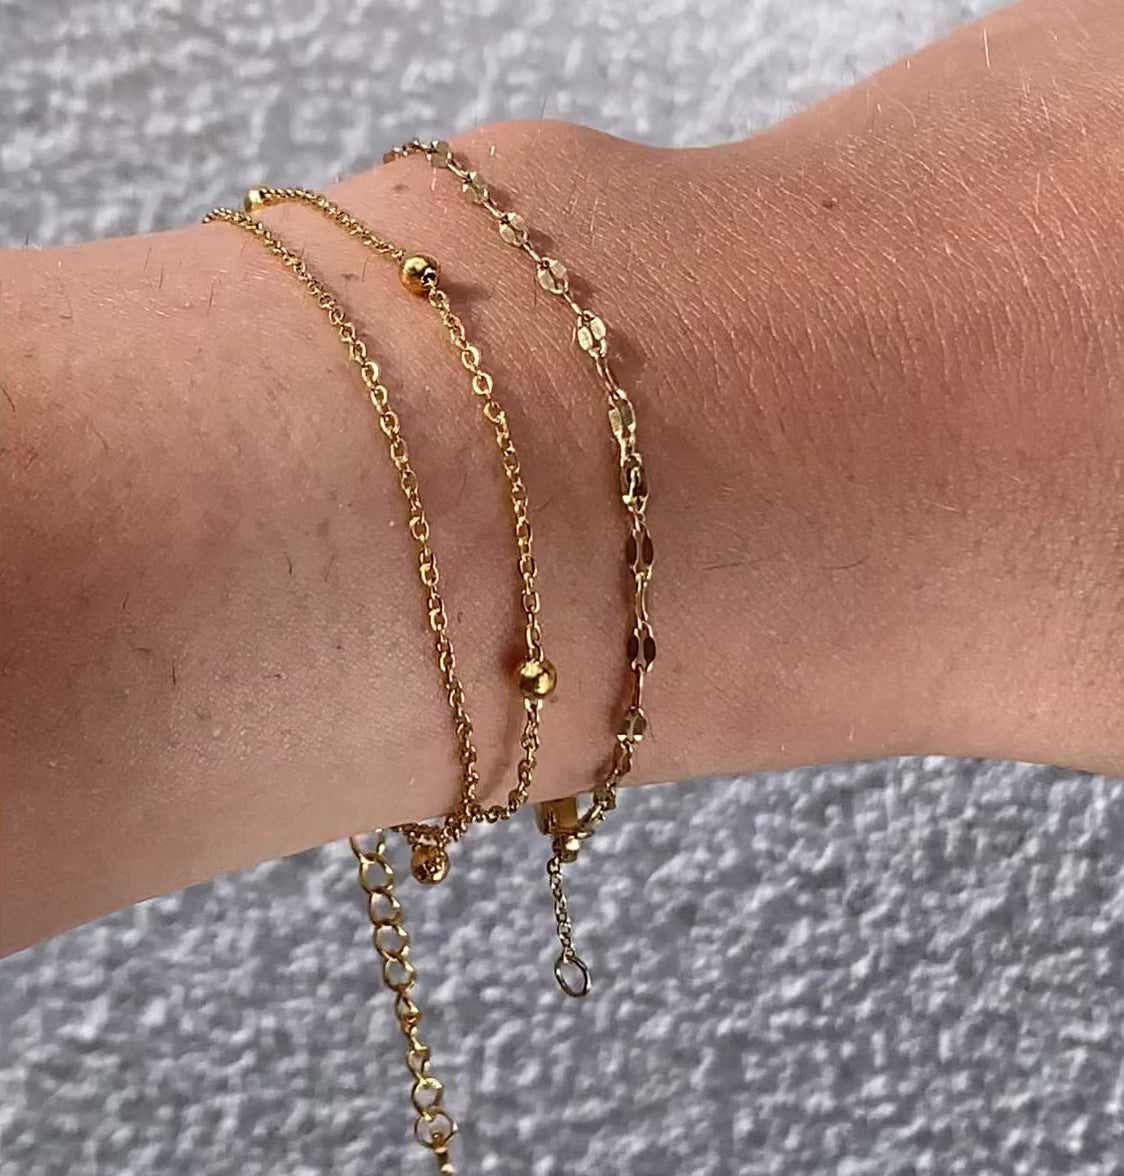 dainty gold chain bracelets waterproof jewelry